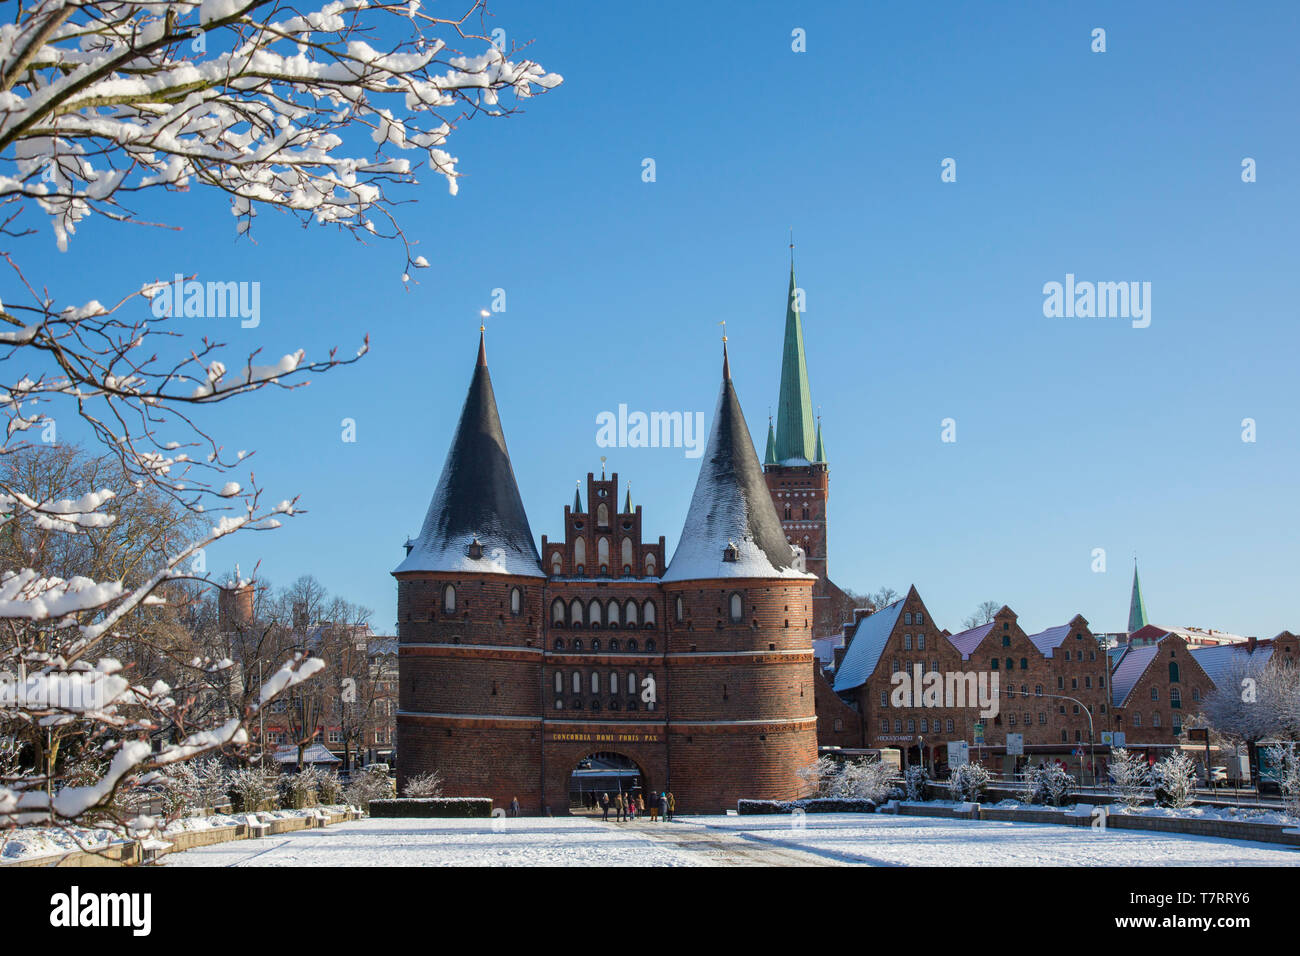 La ciudad gótica de ladrillo Holstentor gate/ Holstein Gate en la ciudad hanseática de Lübeck en invierno, Schleswig-Holstein, Alemania Foto de stock